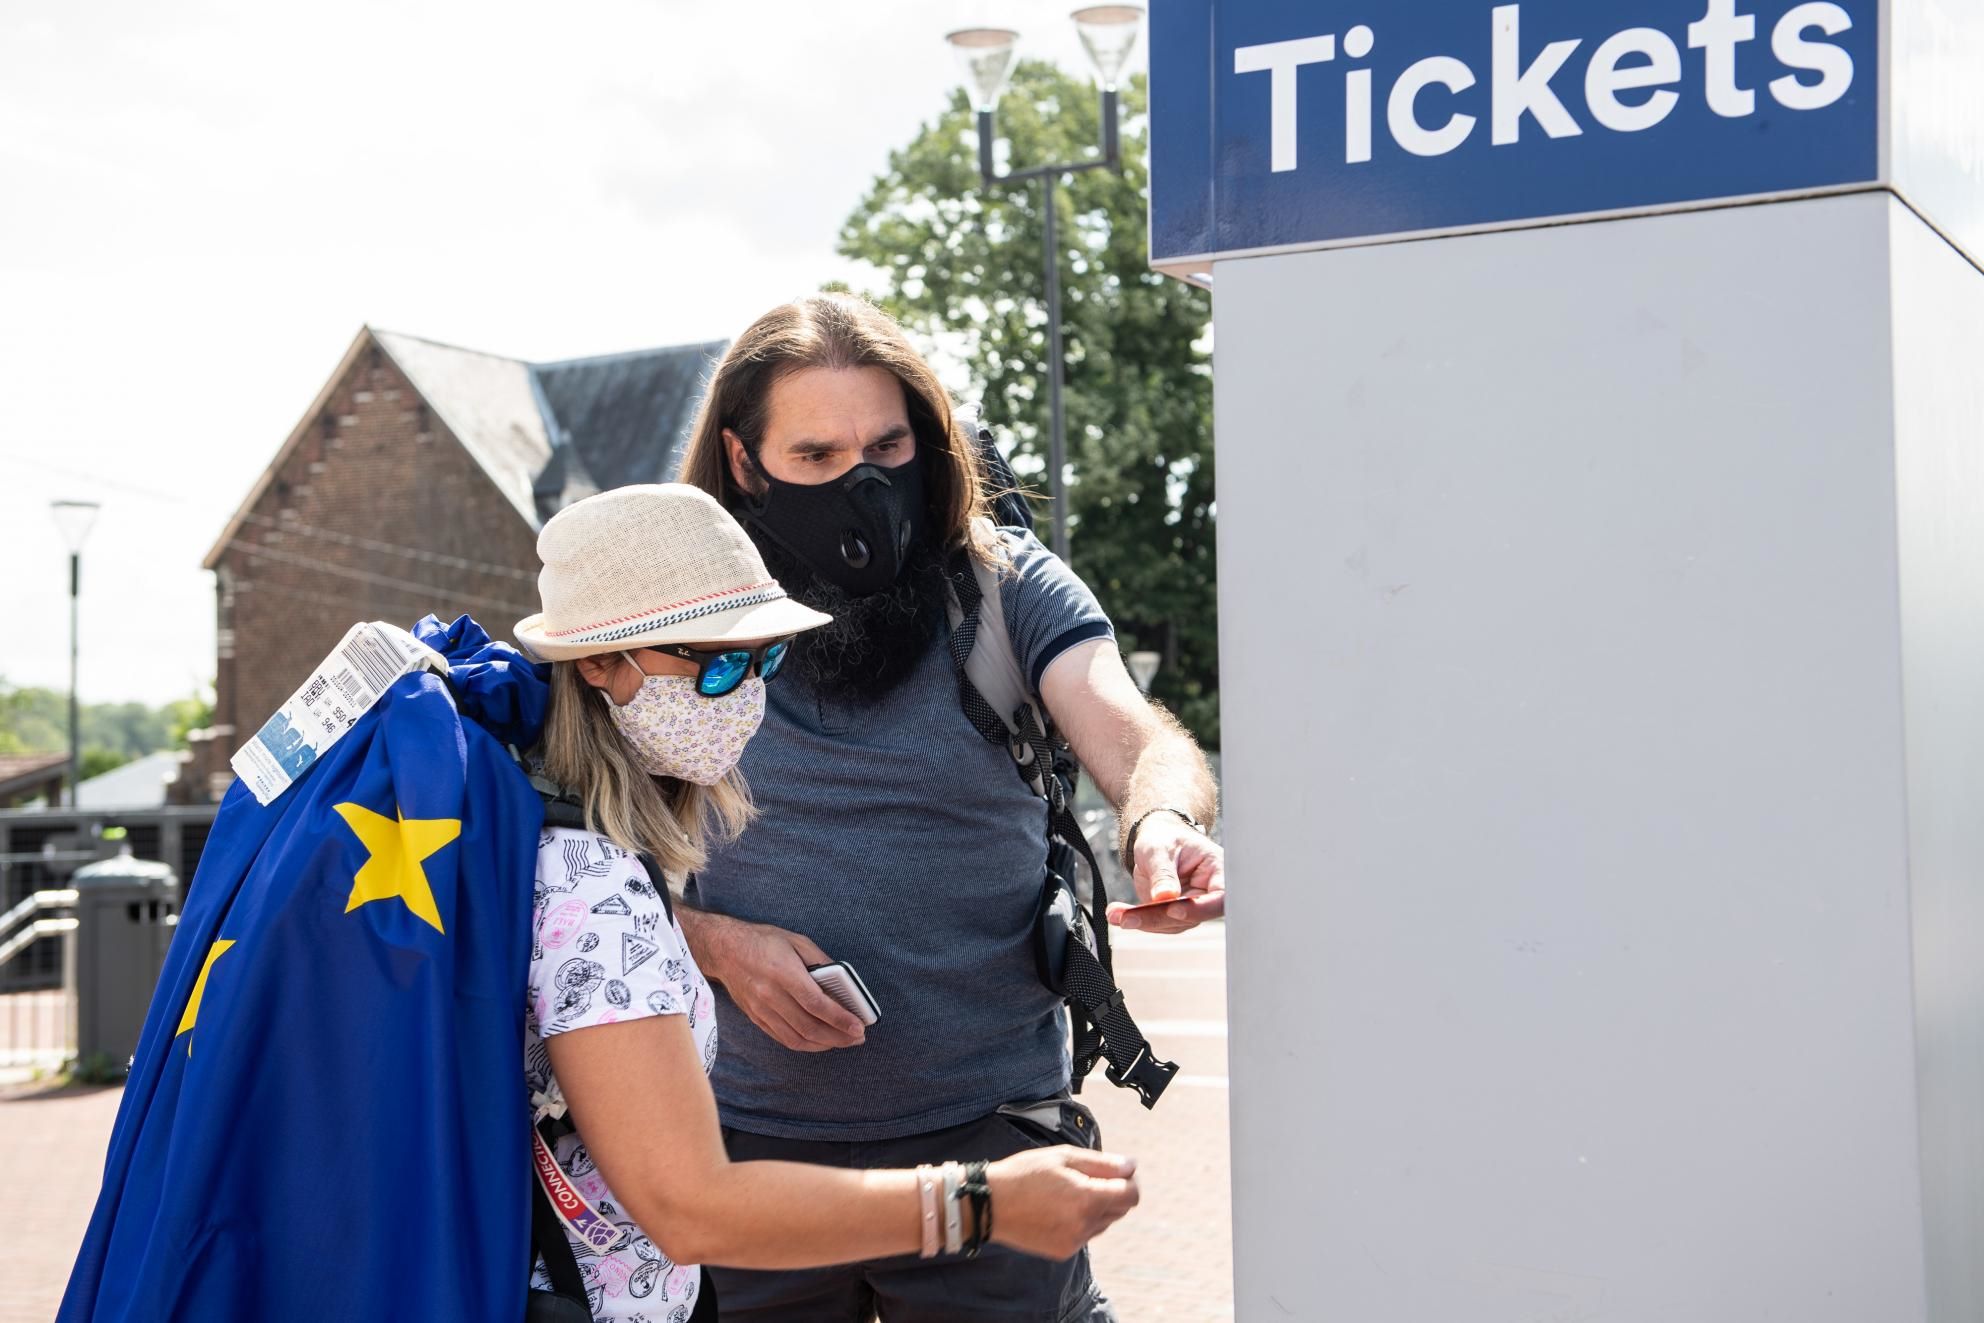 Öffentliche Konsultation zum Kauf von Fahrkarten für Reisen in der EU